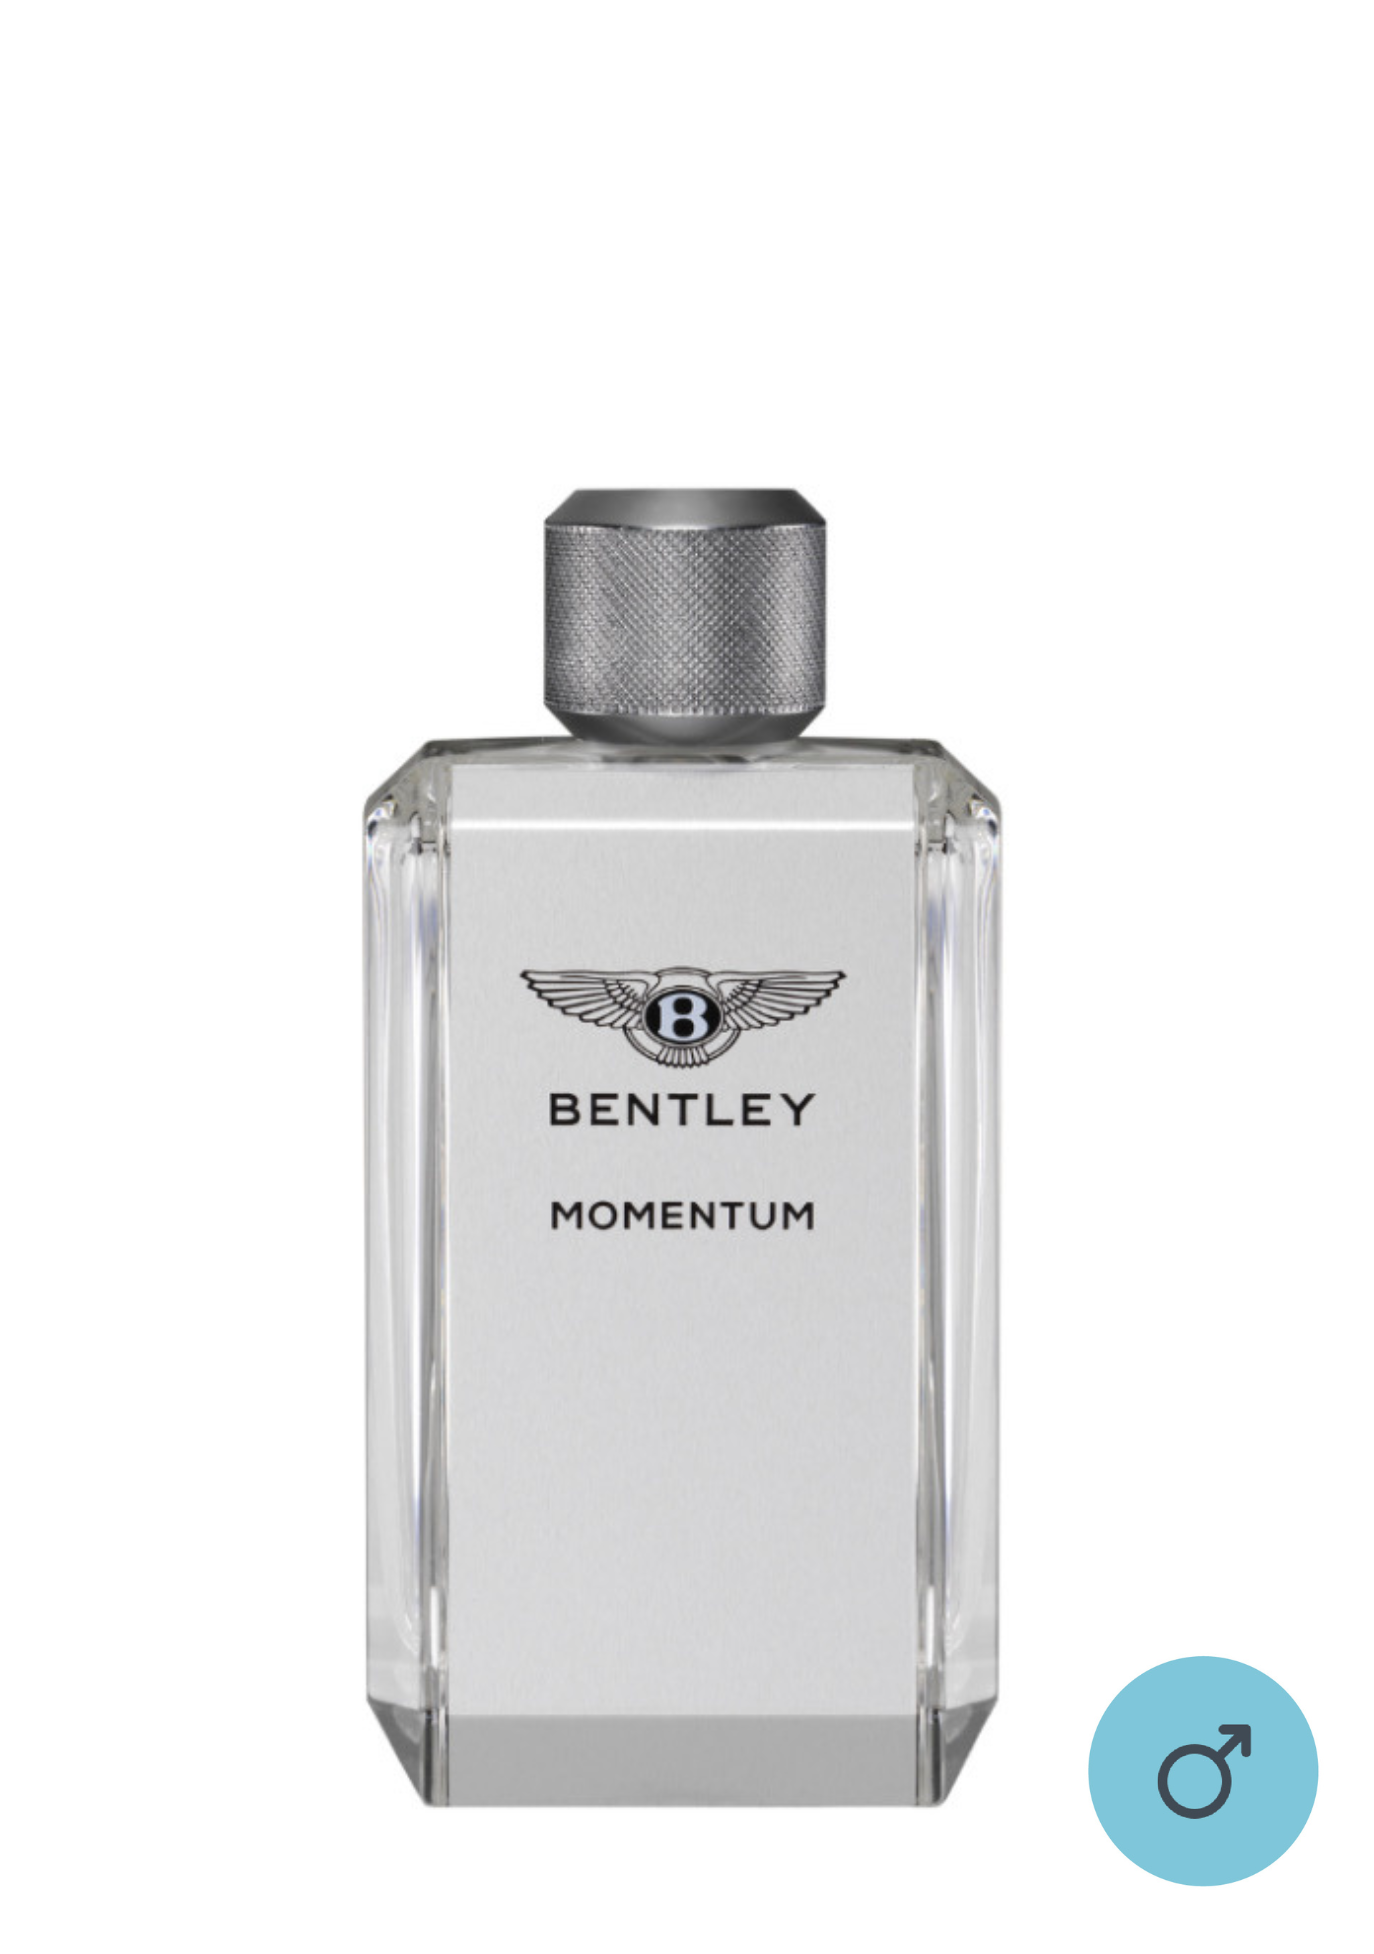 [New in Box] Bentley Momentum EDT